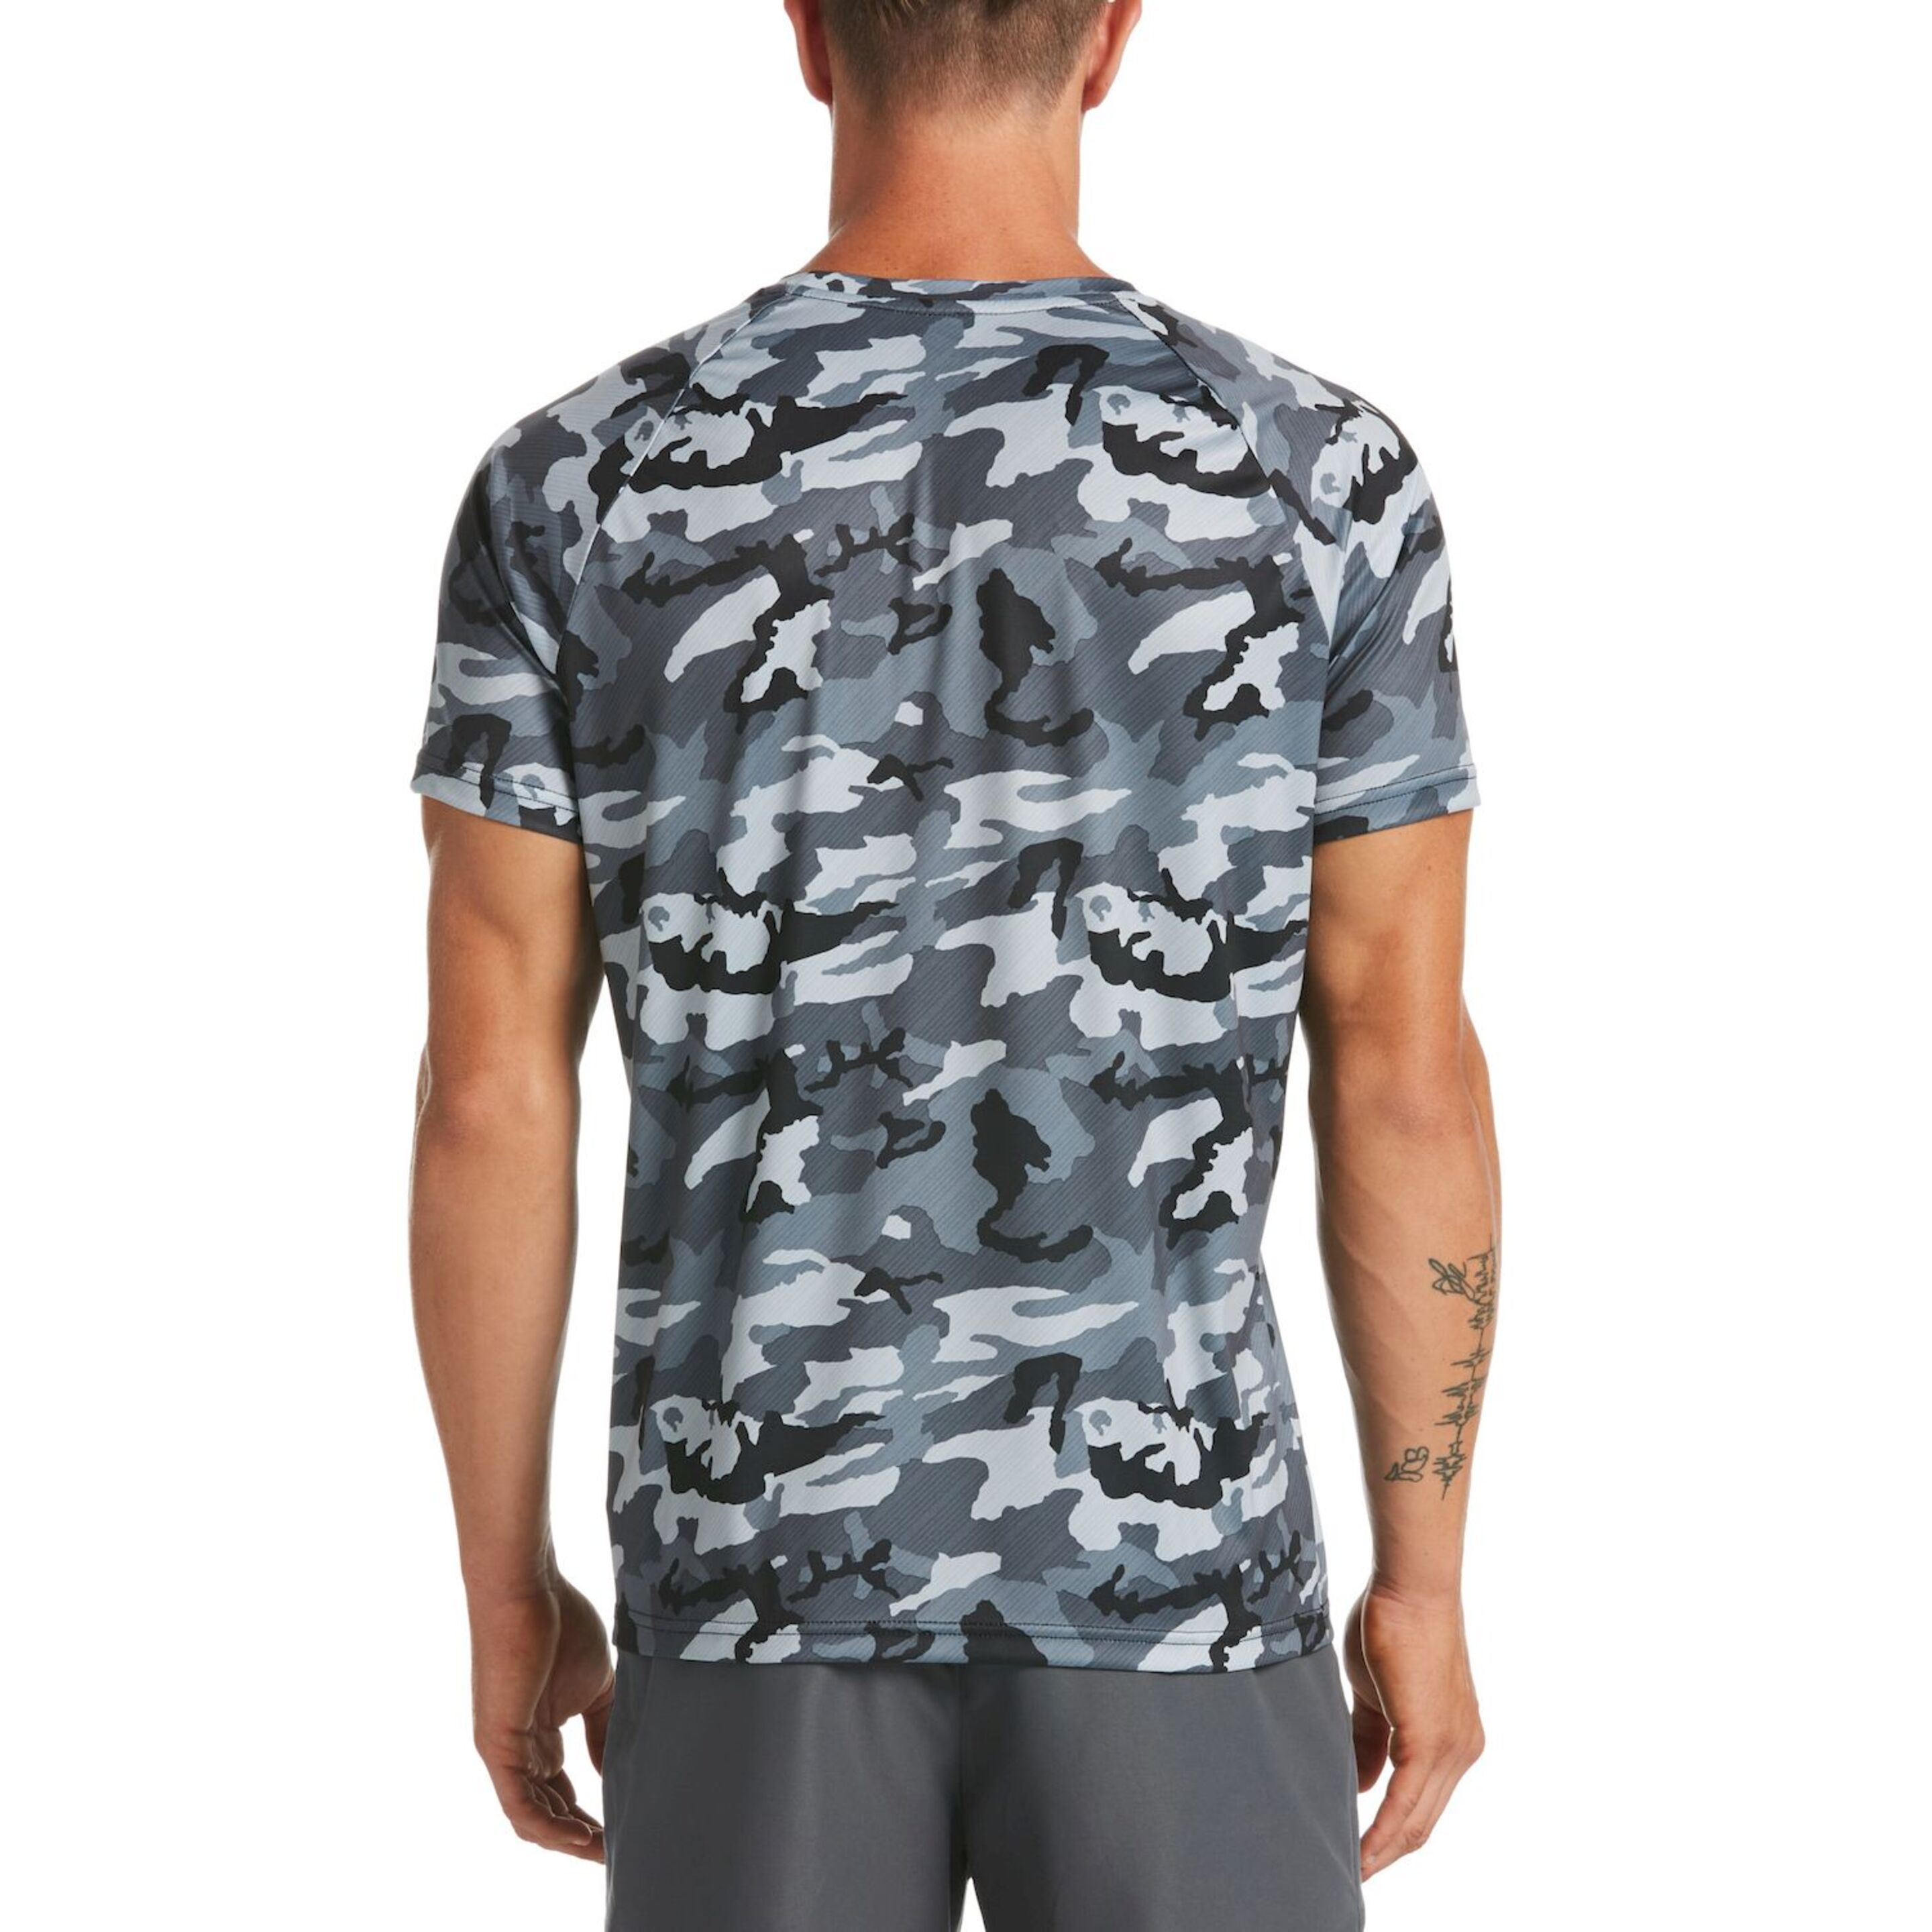 Camiseta Nike Lifestyle Camo Short Sleeve Hydroguard